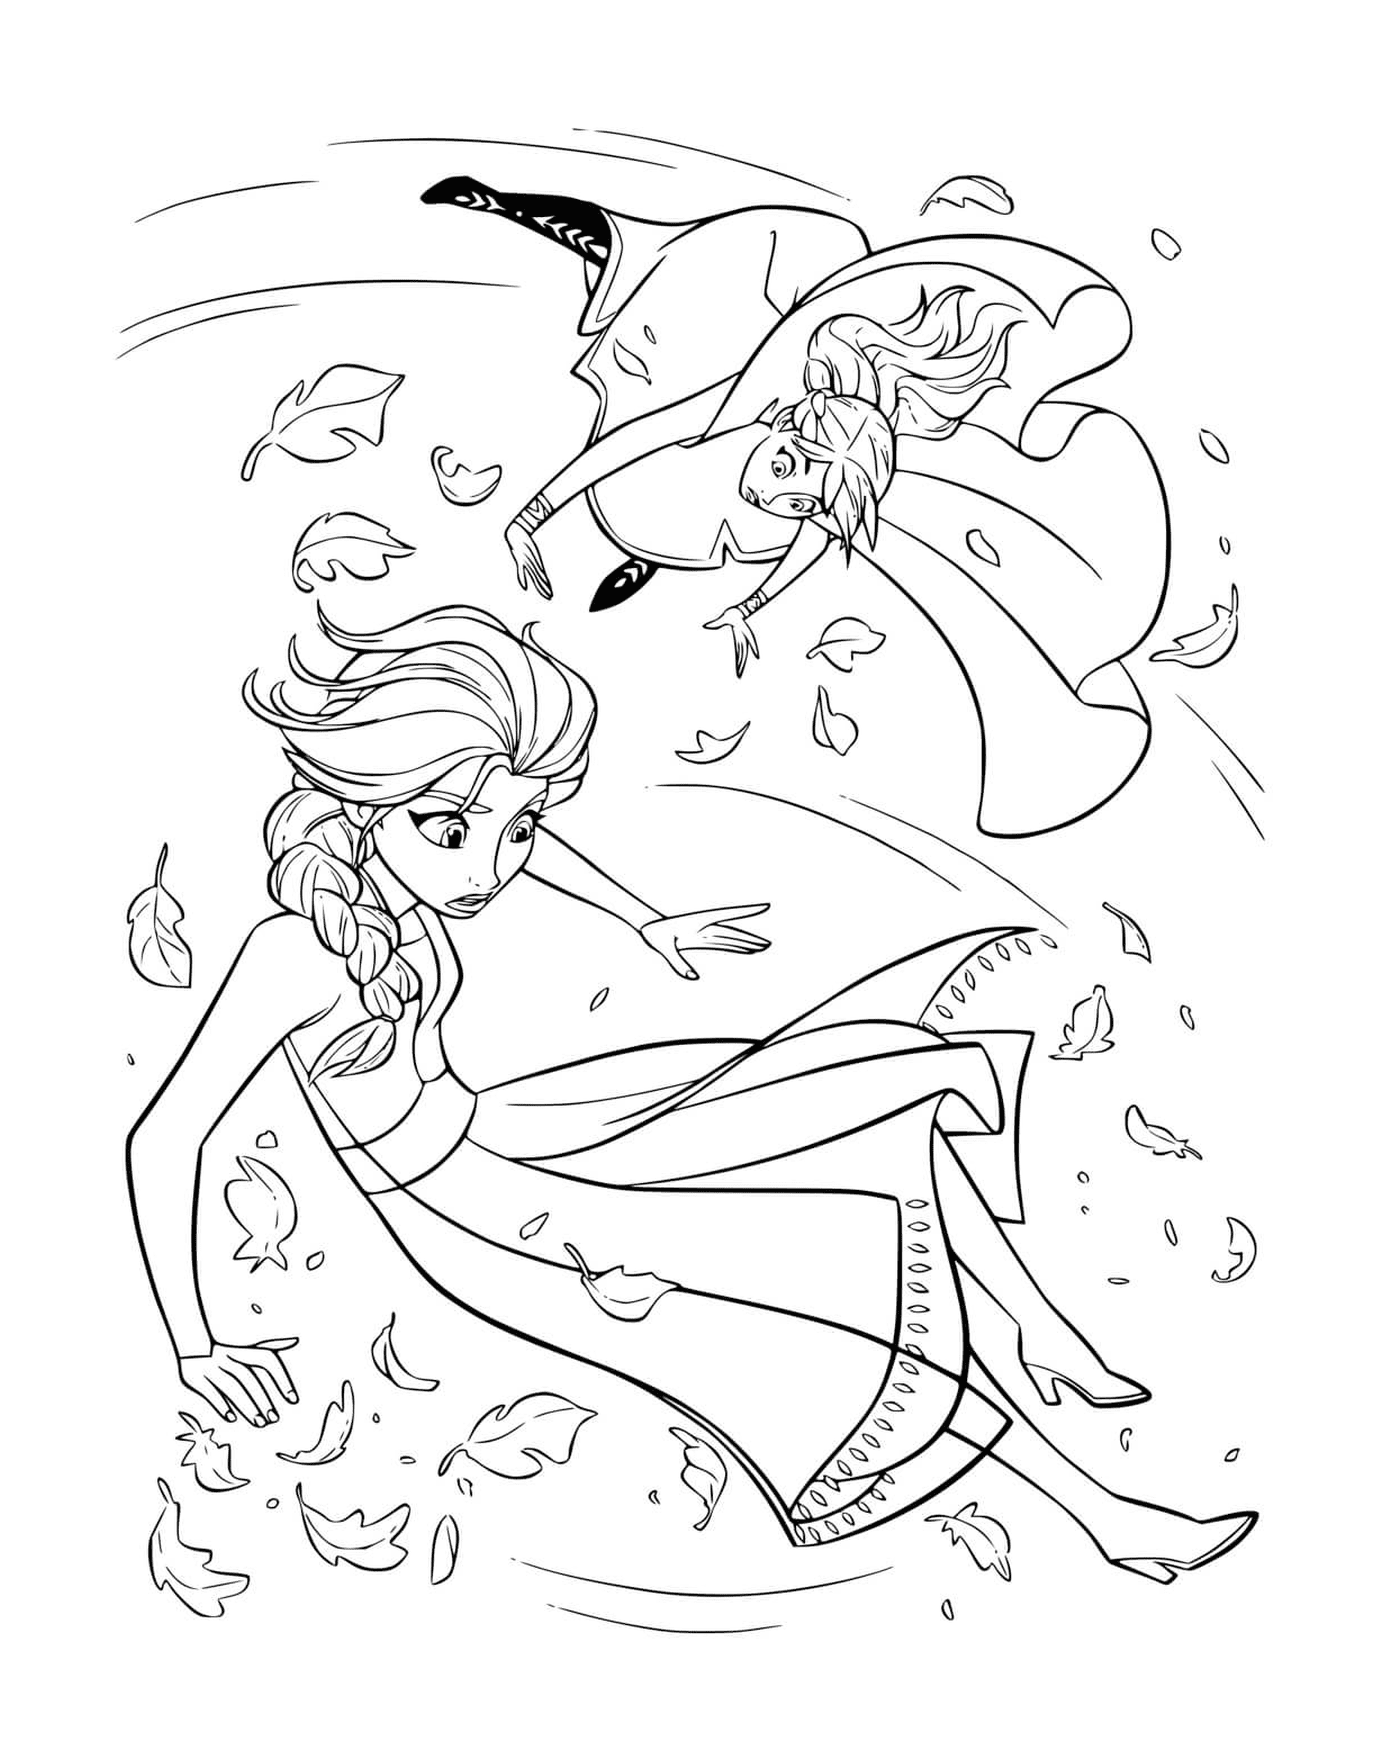   Anna et Elsa tourbillon de glace 